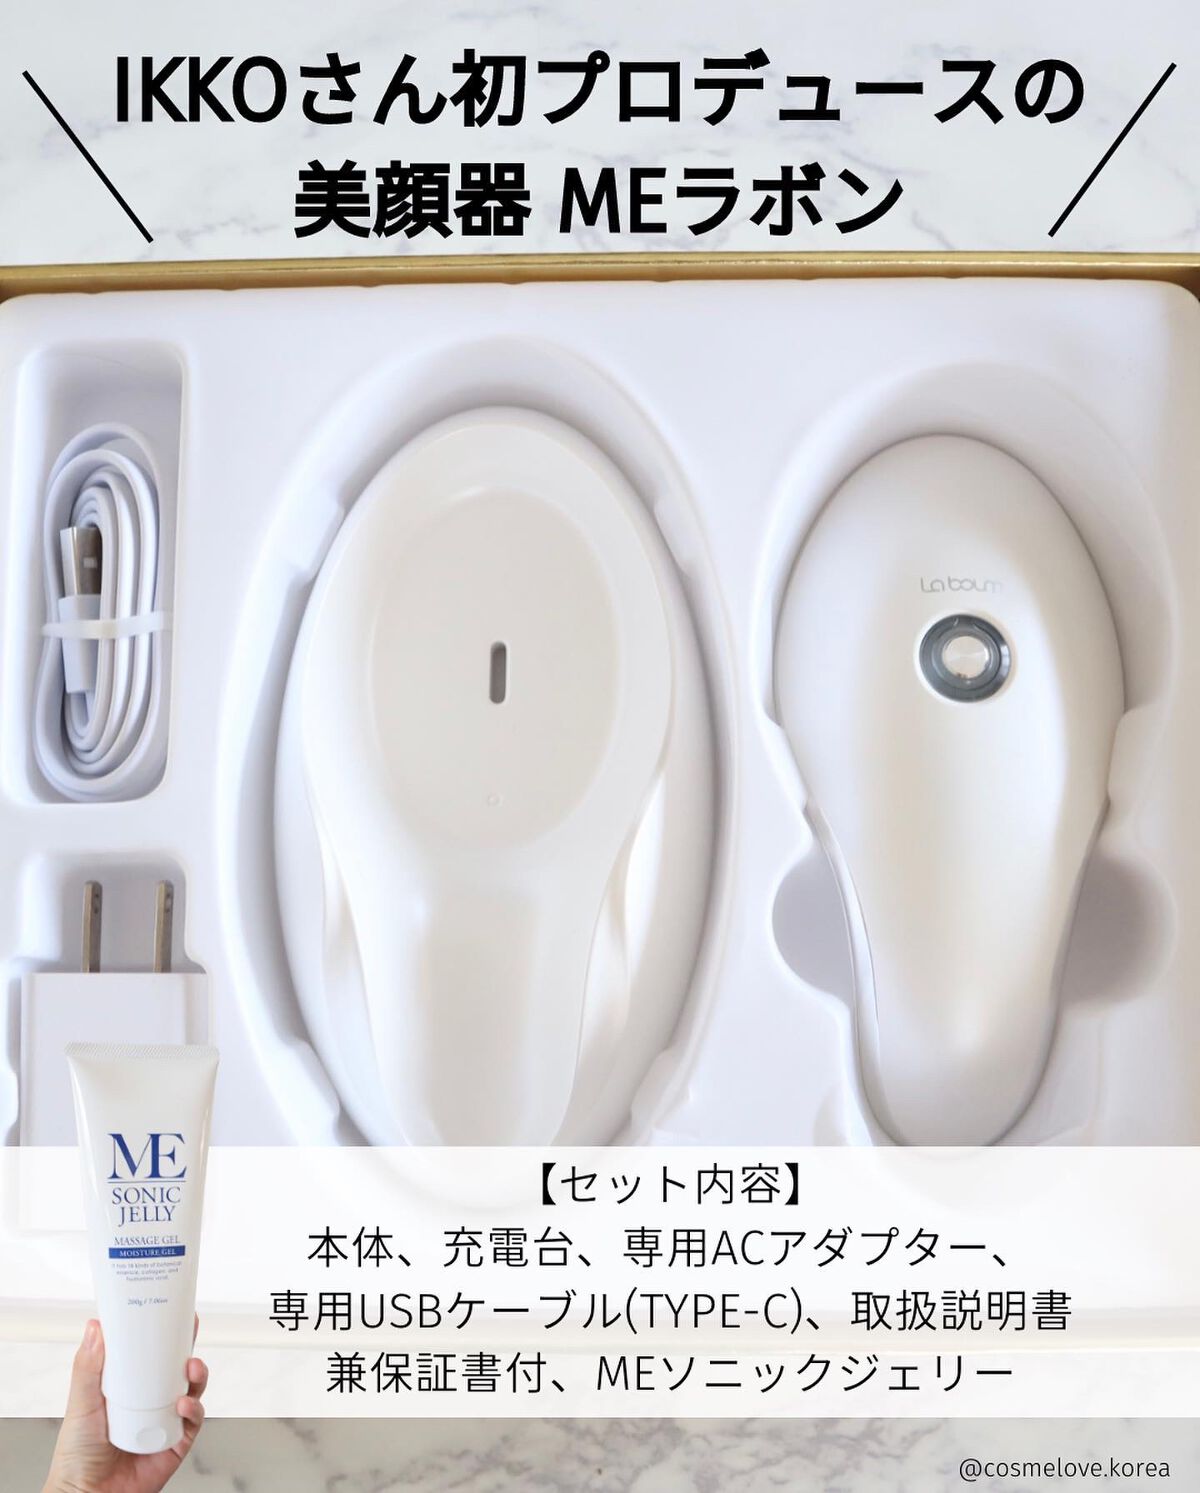 IKKO プロデュース美顔器 MEラボン＆MEマッサージジェル - 美容機器